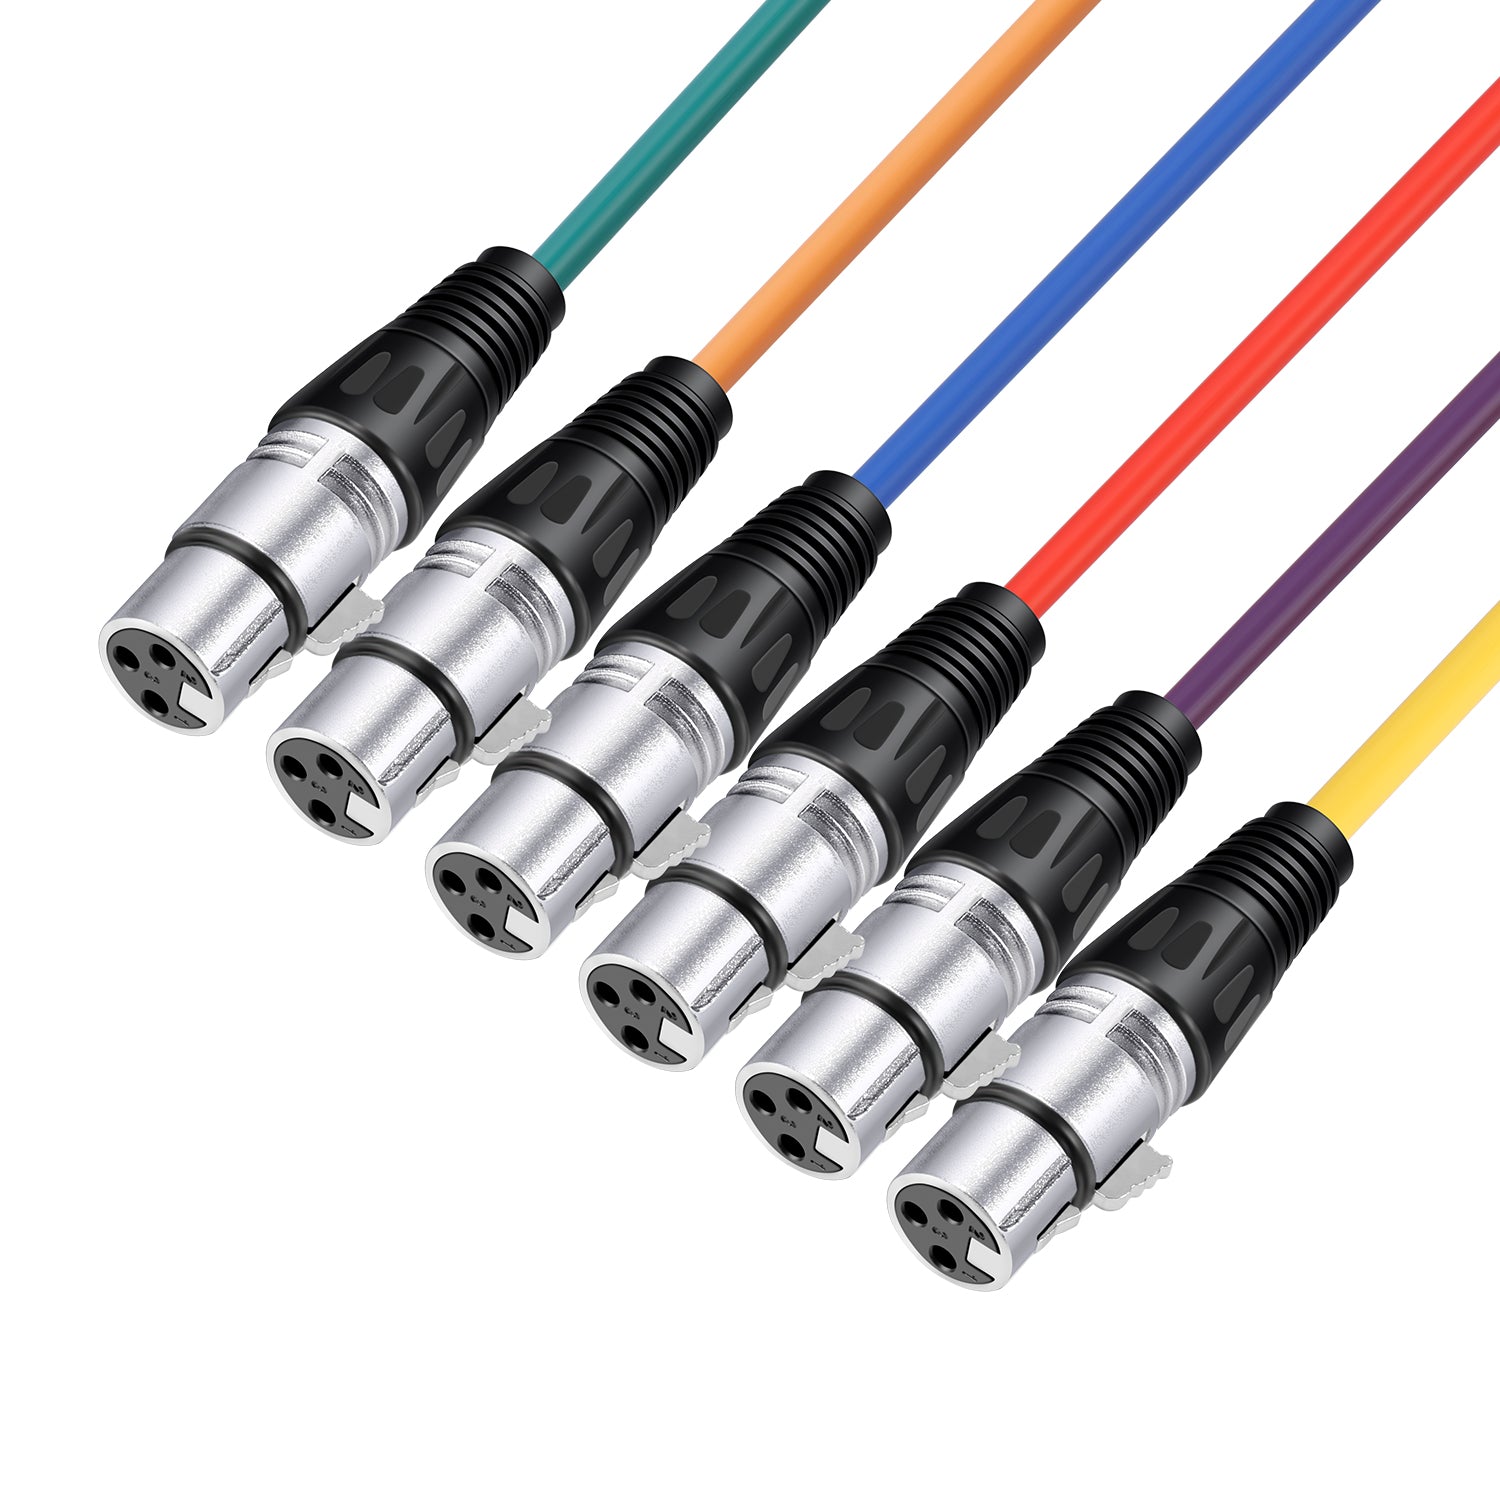 Câble XLR - Micro - Enceinte